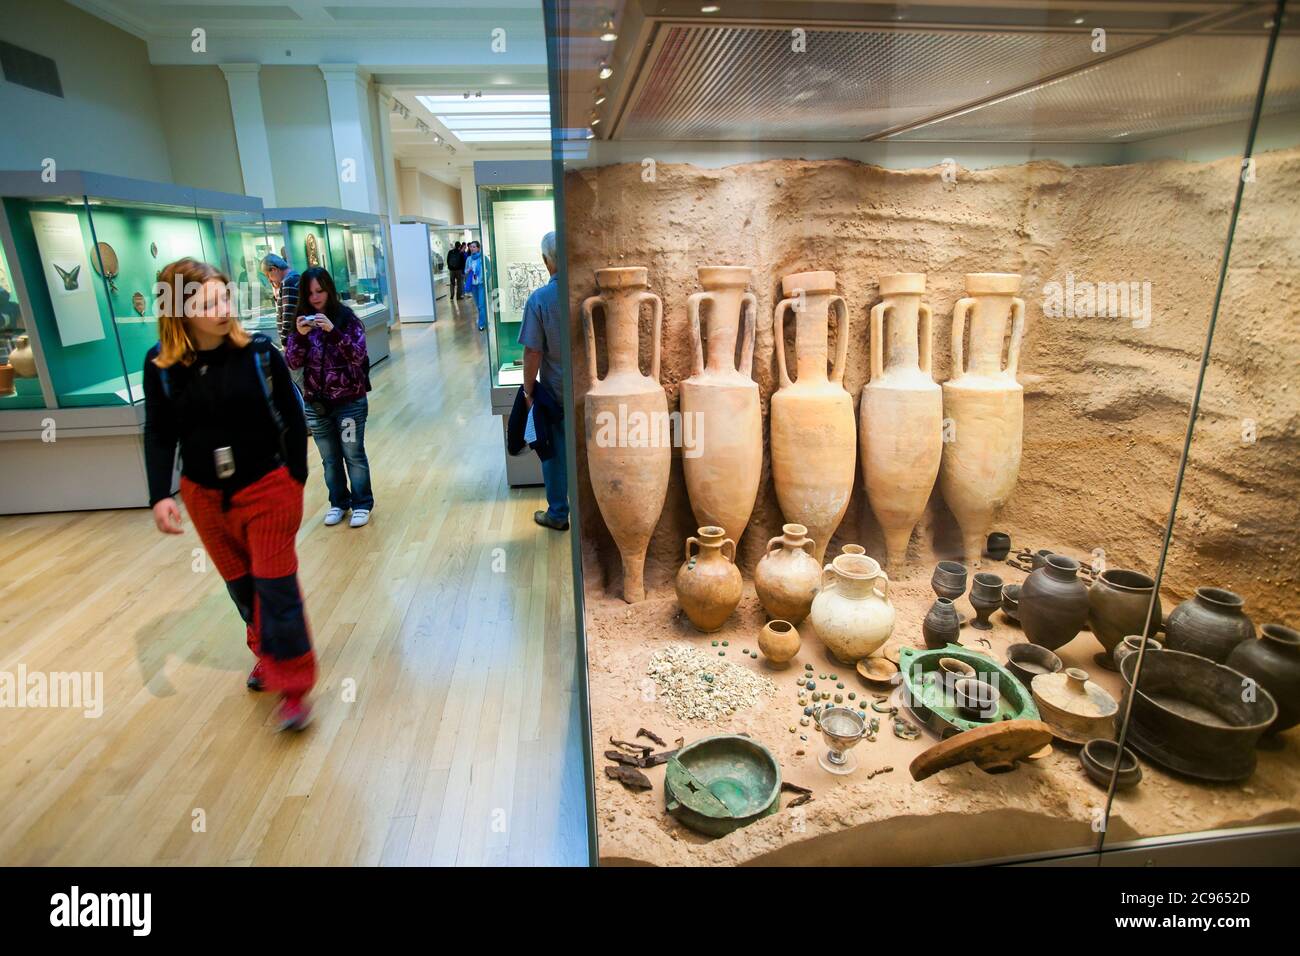 Londres, Grande-Bretagne - le British Museum. Les touristes visitent l'exposition permanente. Ici, nous voyons des marchandises graves, des vases et des bols en argile, du C Banque D'Images